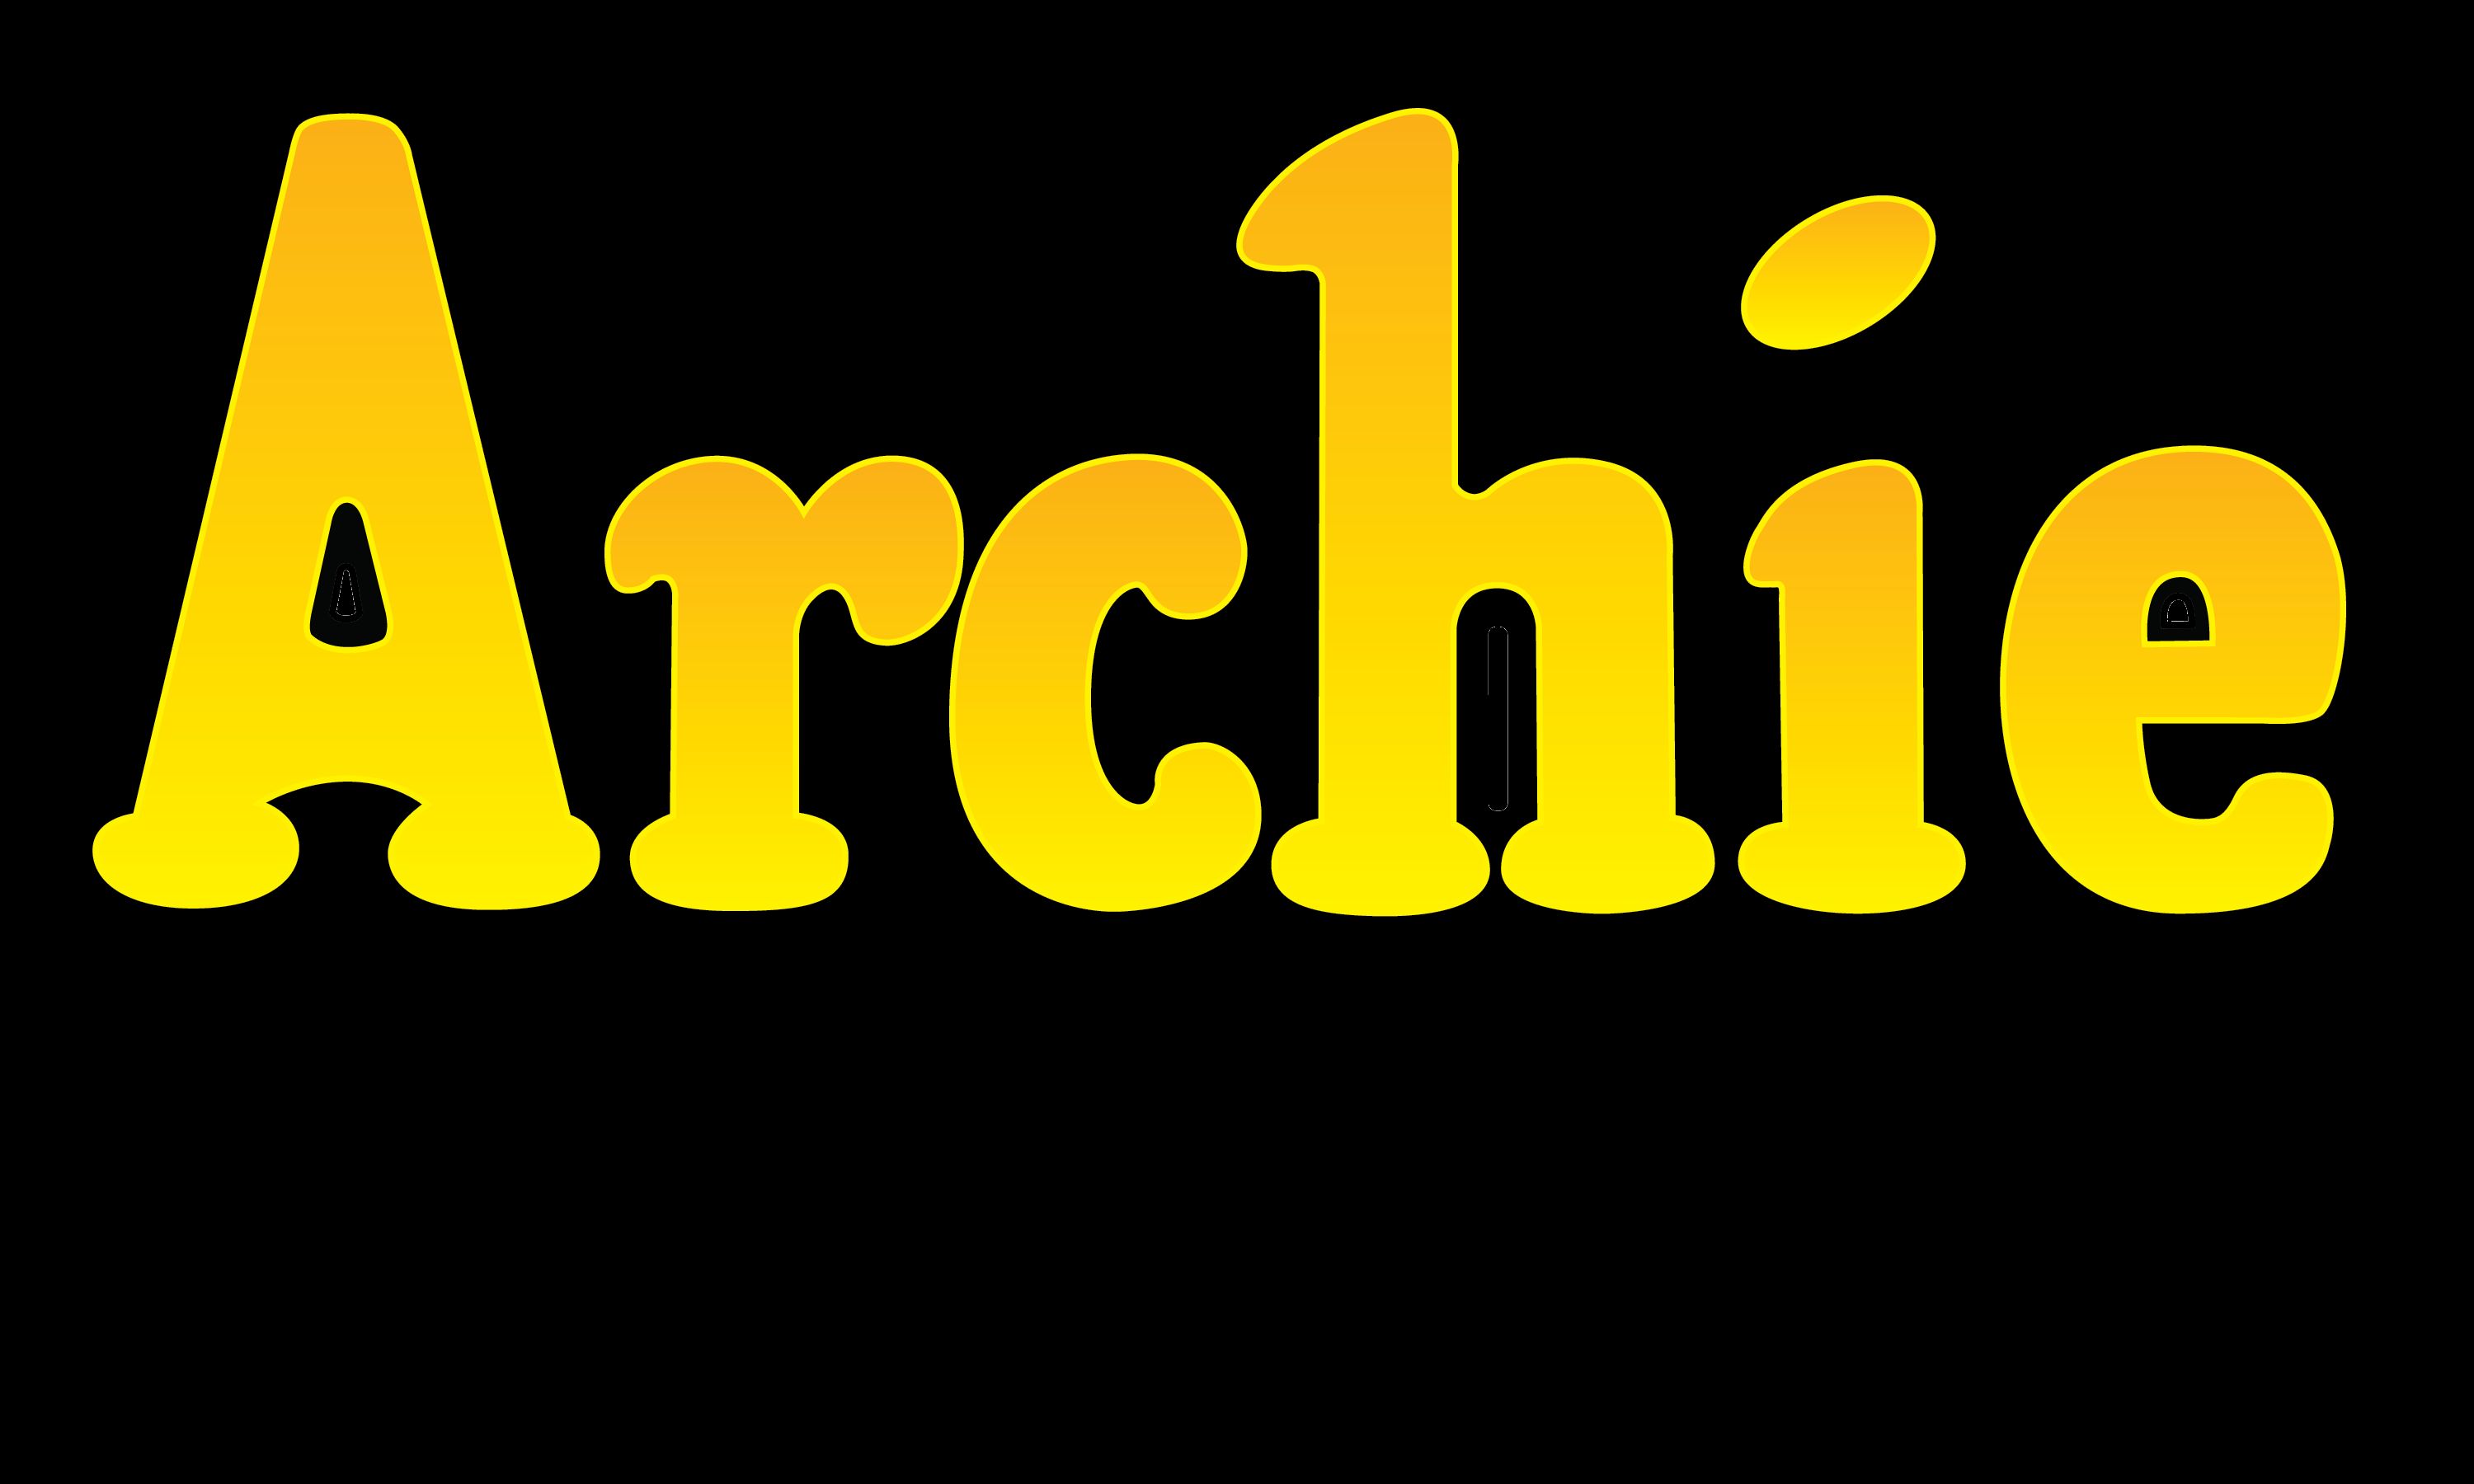 comics, archie, archie comics, logo